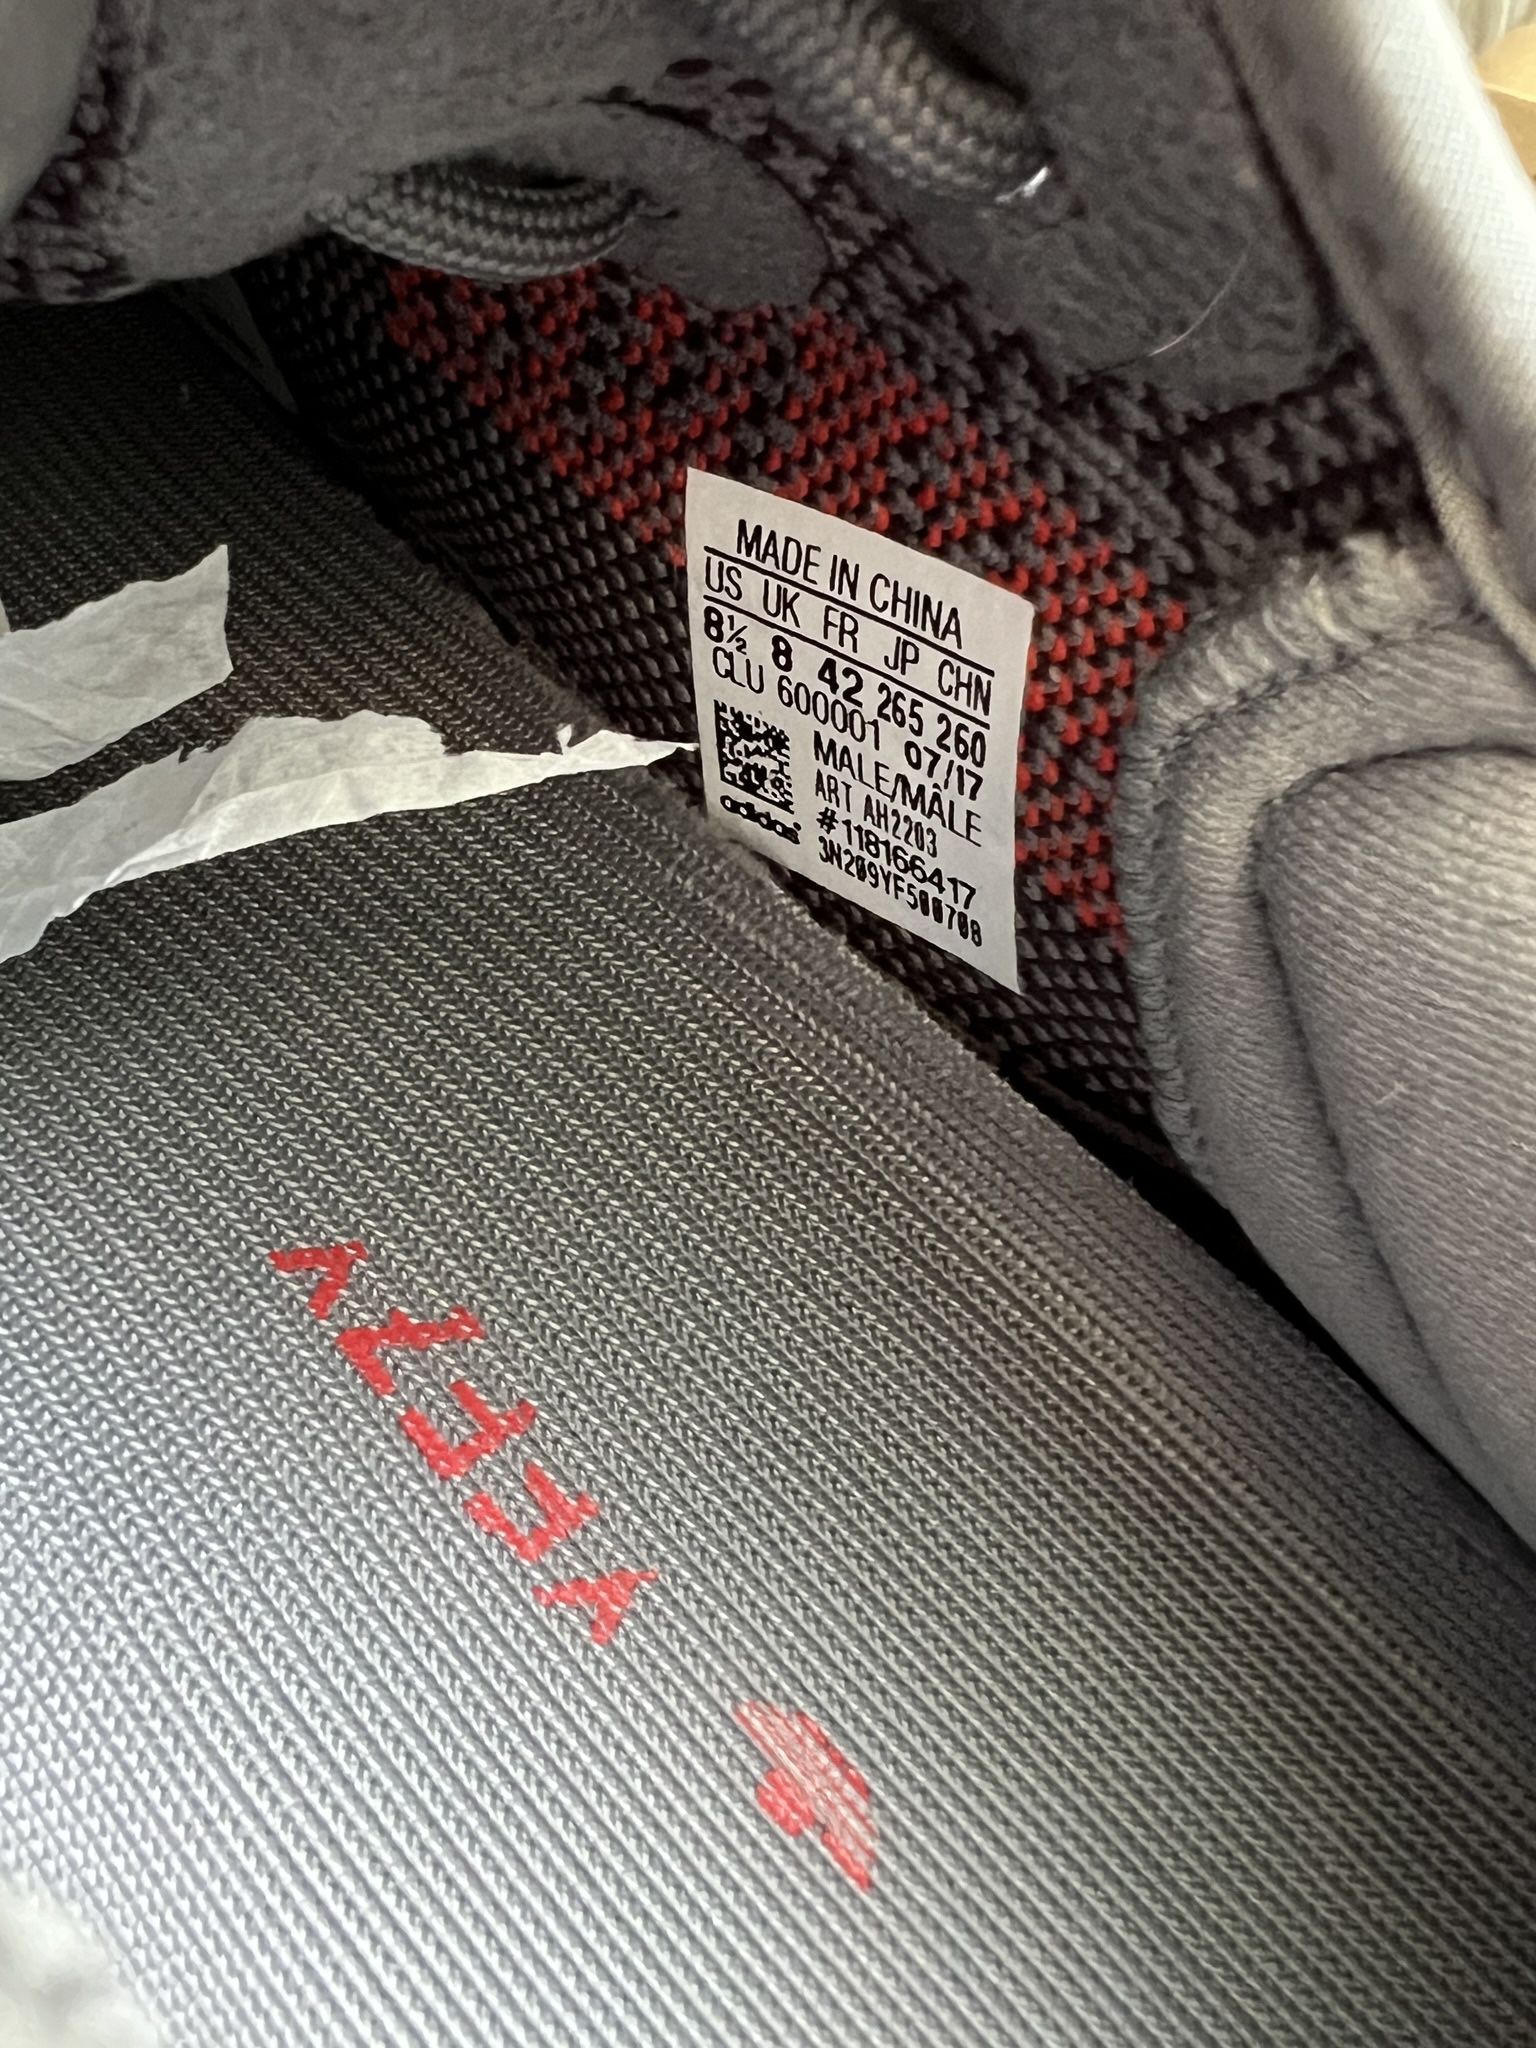 Adidas Yeezy 350 Beluga 2.0 Size 8.5